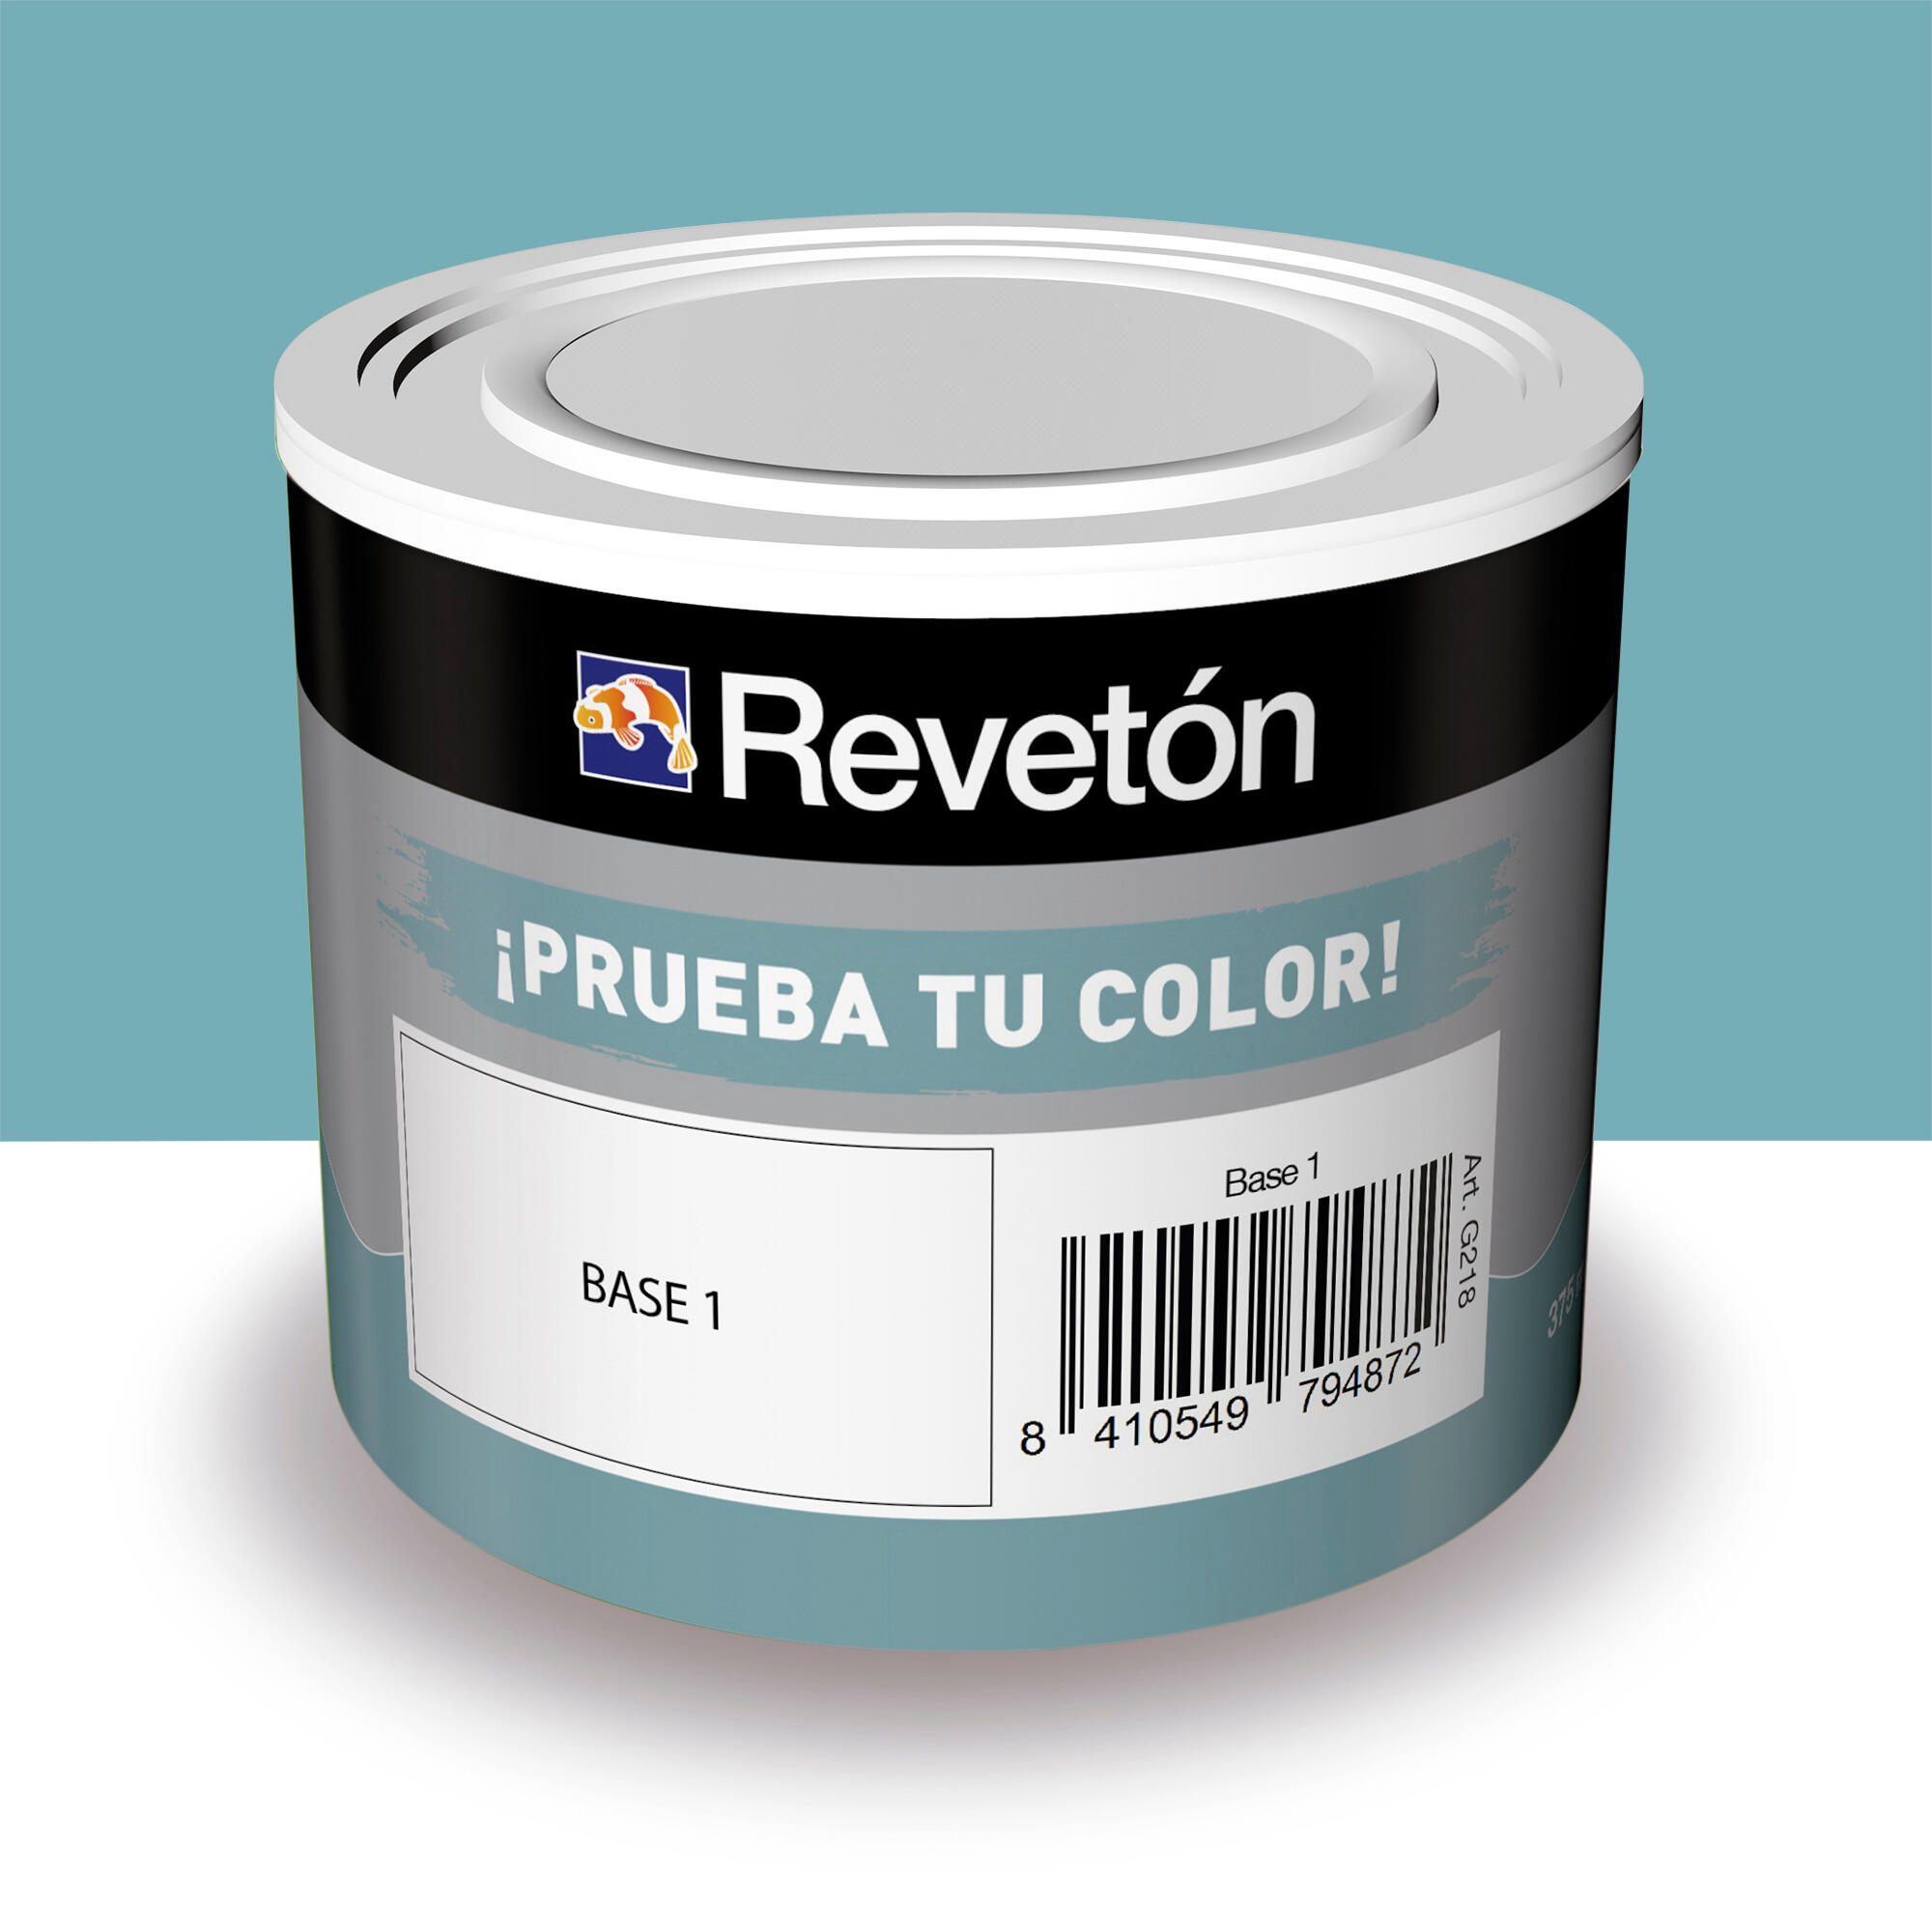 Tester de pintura mate 0.375l 3020-b10g azul verdoso oscuro